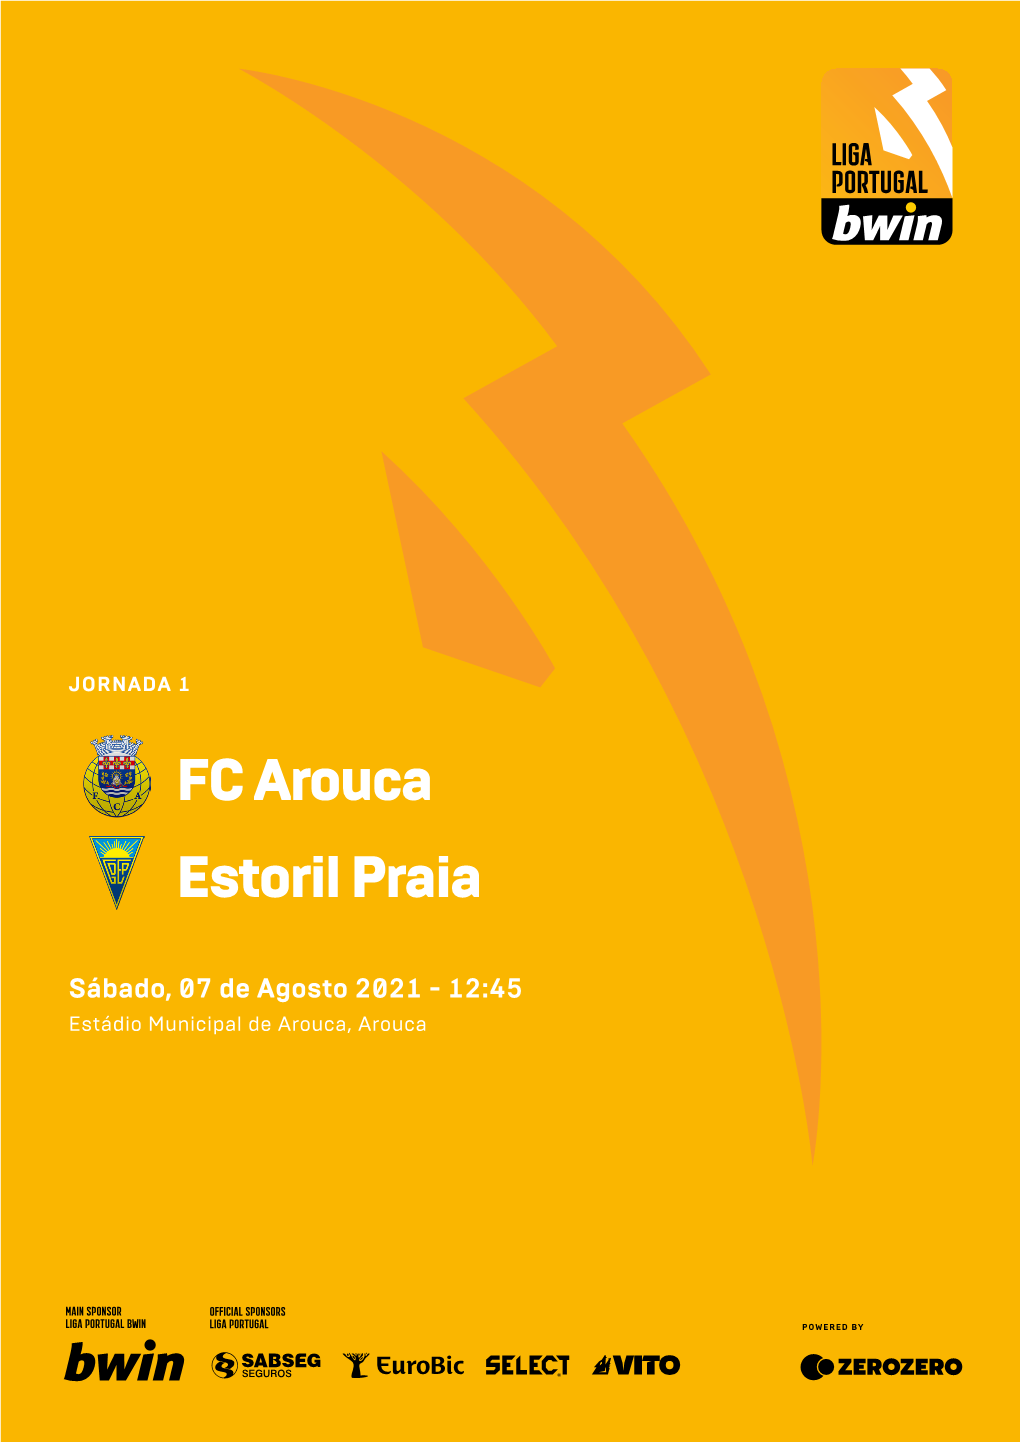 FC Arouca Estoril Praia